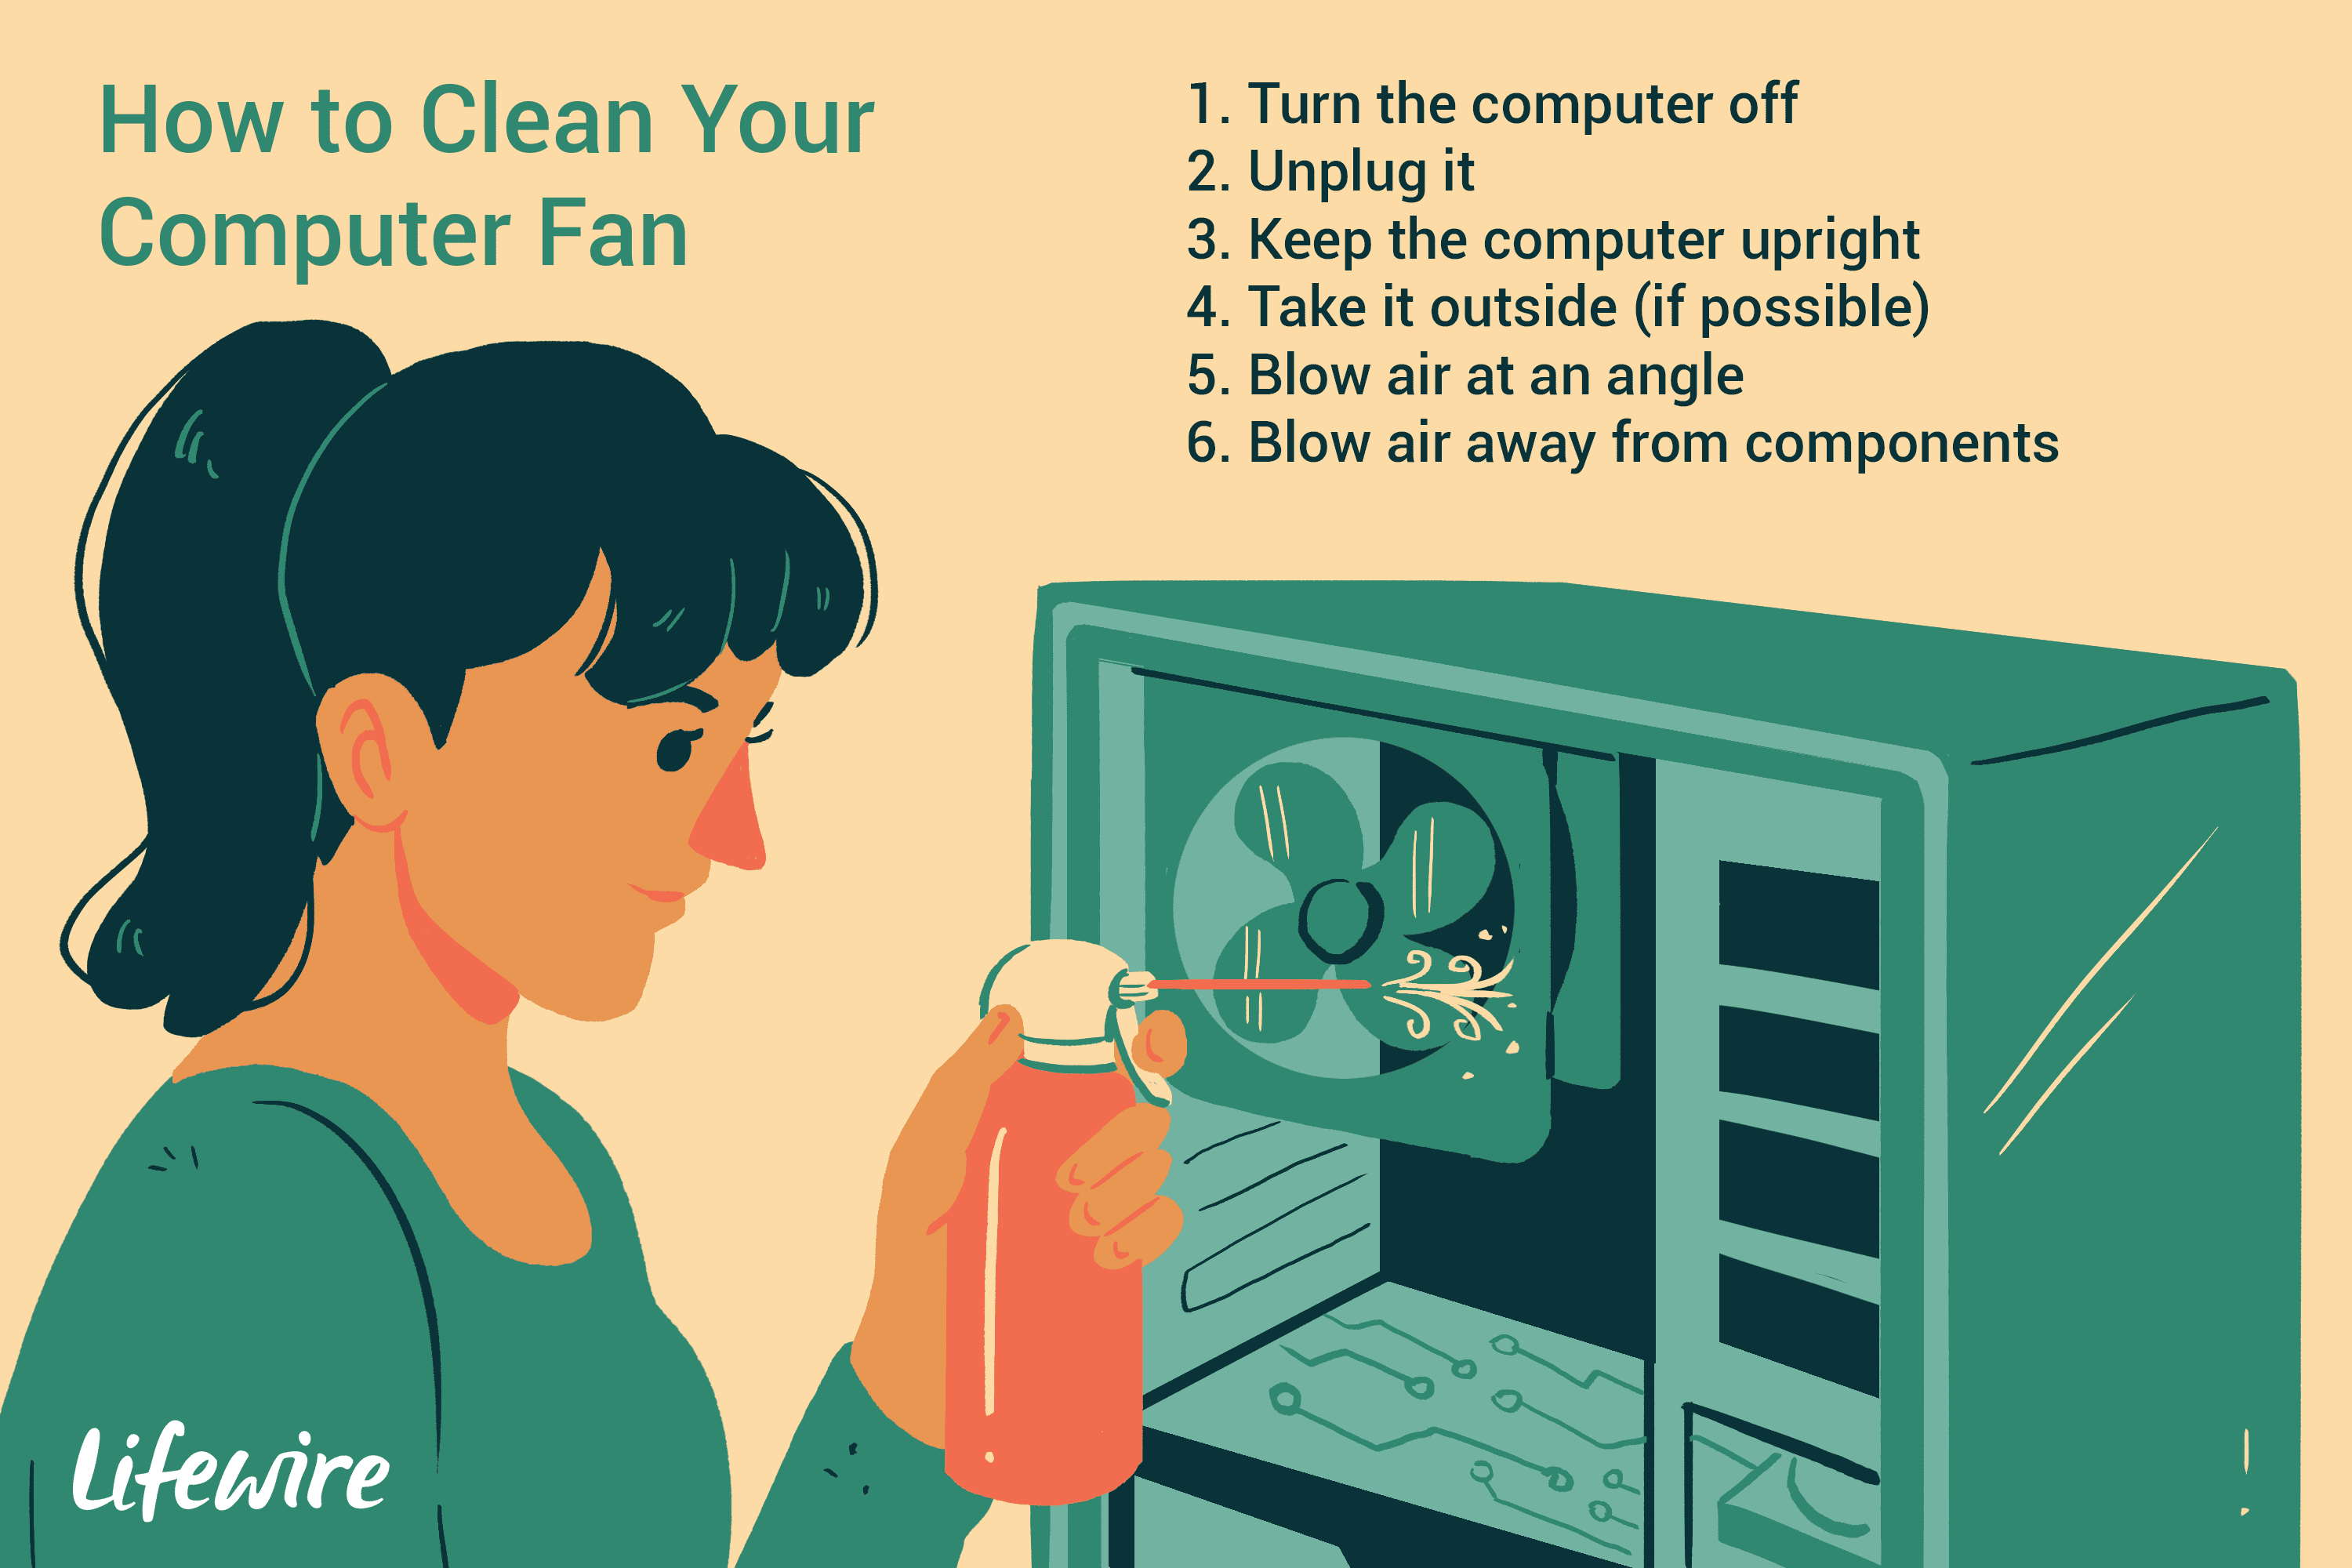 Иллюстрация женщины очищая вентилятор компьютера с законсервированным воздухом.